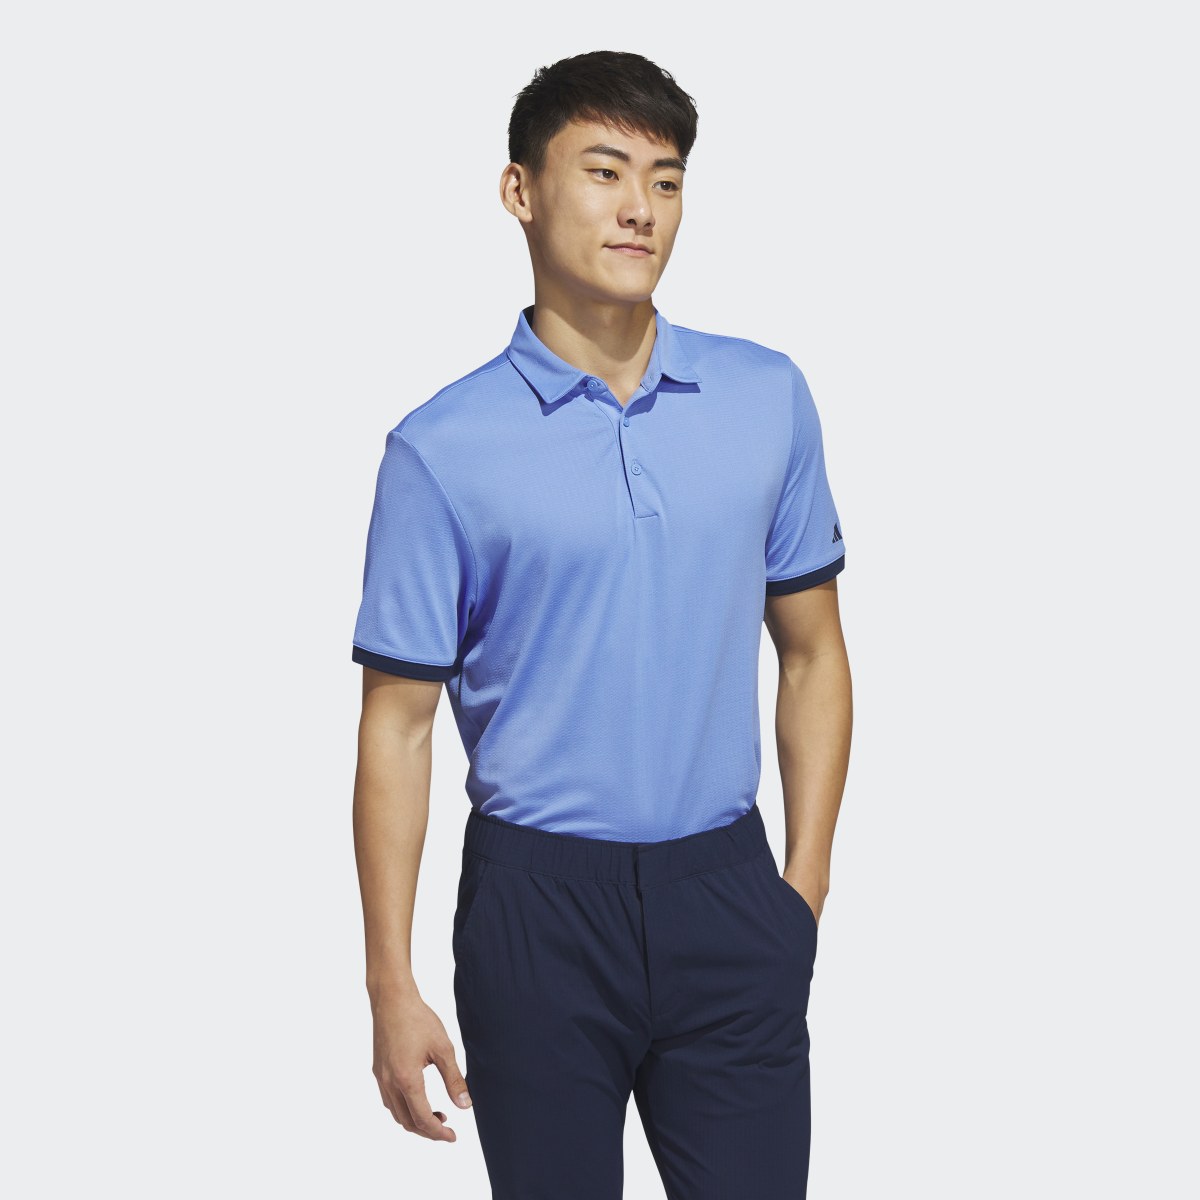 Adidas HEAT.RDY Golf Polo Shirt. 4